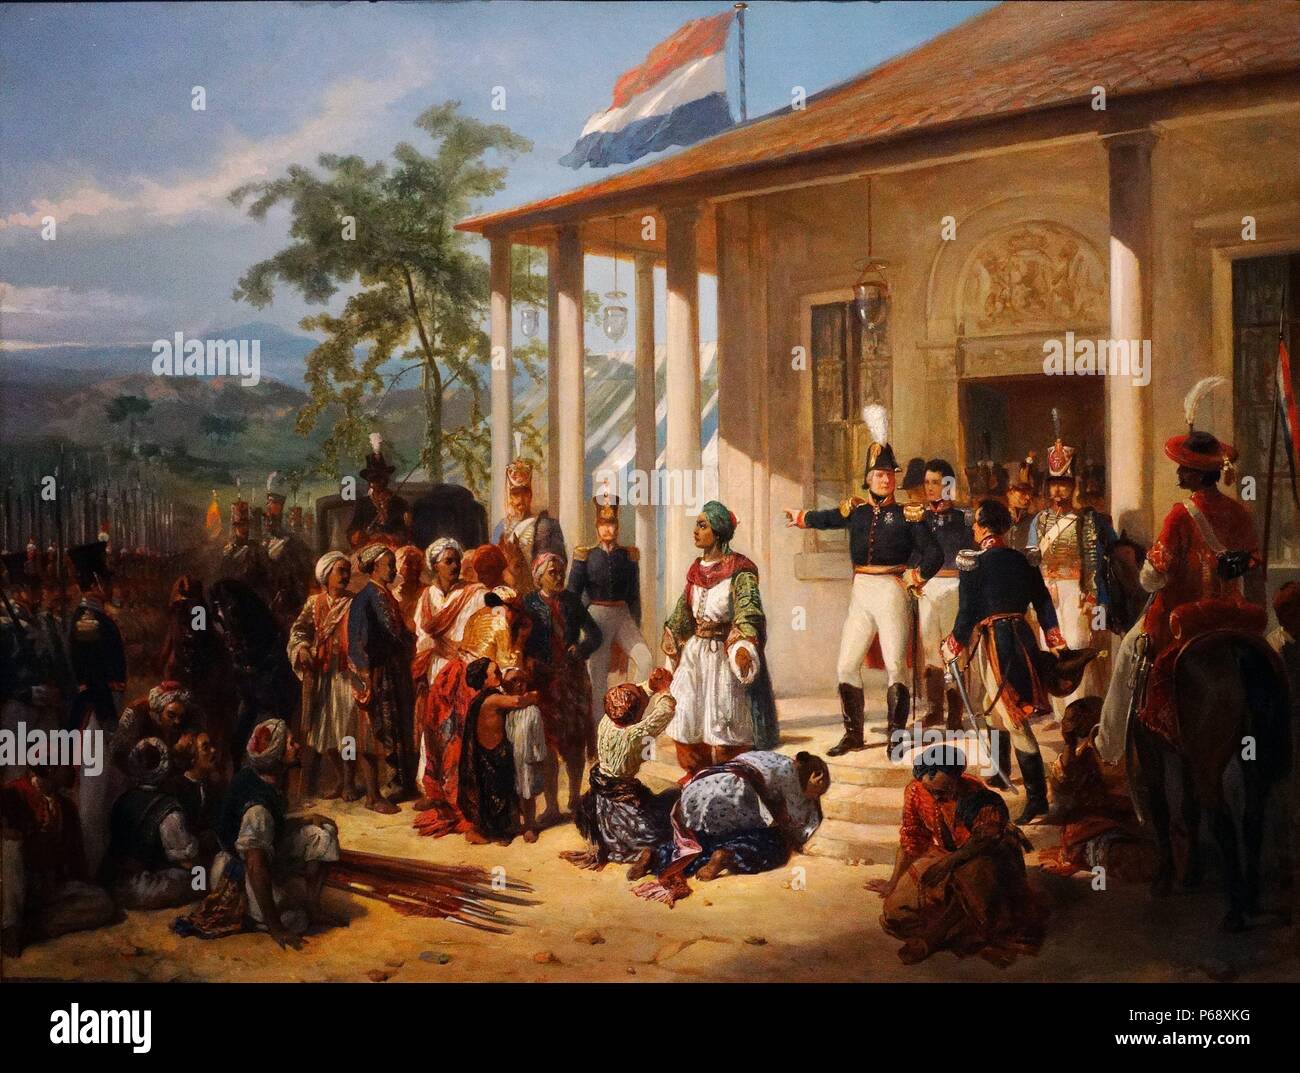 La pintura que representa la presentación de Diepo Negoro al Teniente General Hendrik Merkus Baron de Kock. Pintado por Nicolaas Pieneman (1809-1860) pintor holandés. Fecha 1835 Foto de stock